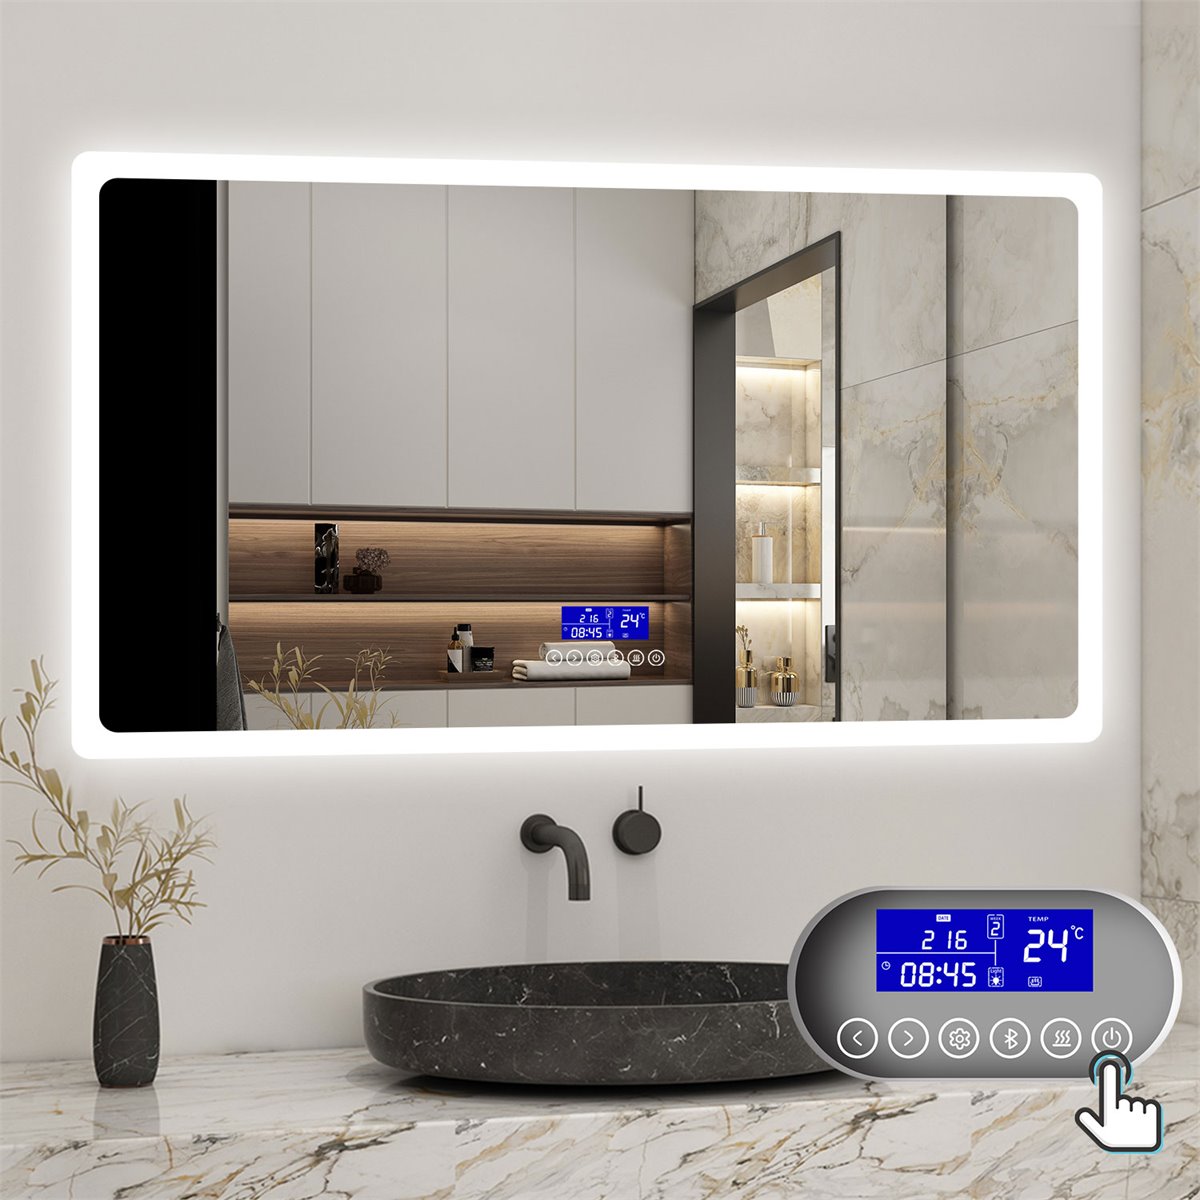 Espejos para baño de 80x80, Compra barato y online